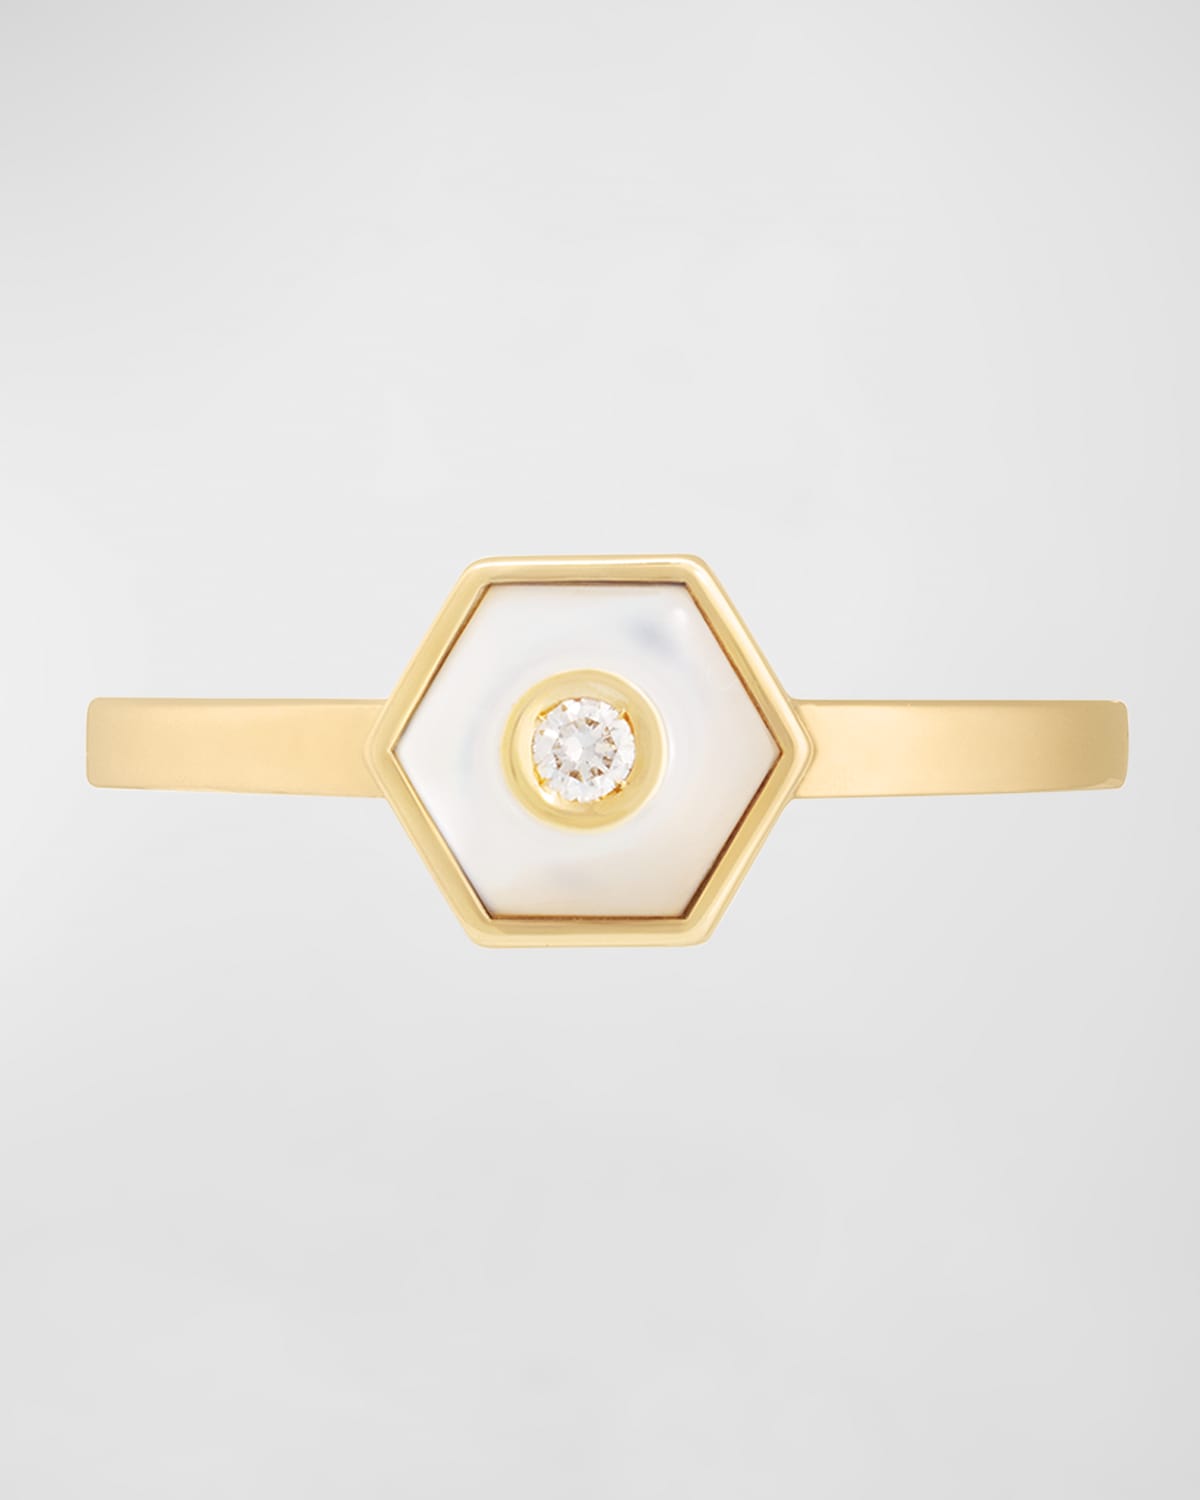 Miseno Baia Sommersa 18k Yellow Gold Ring With White Diamond And Lapis